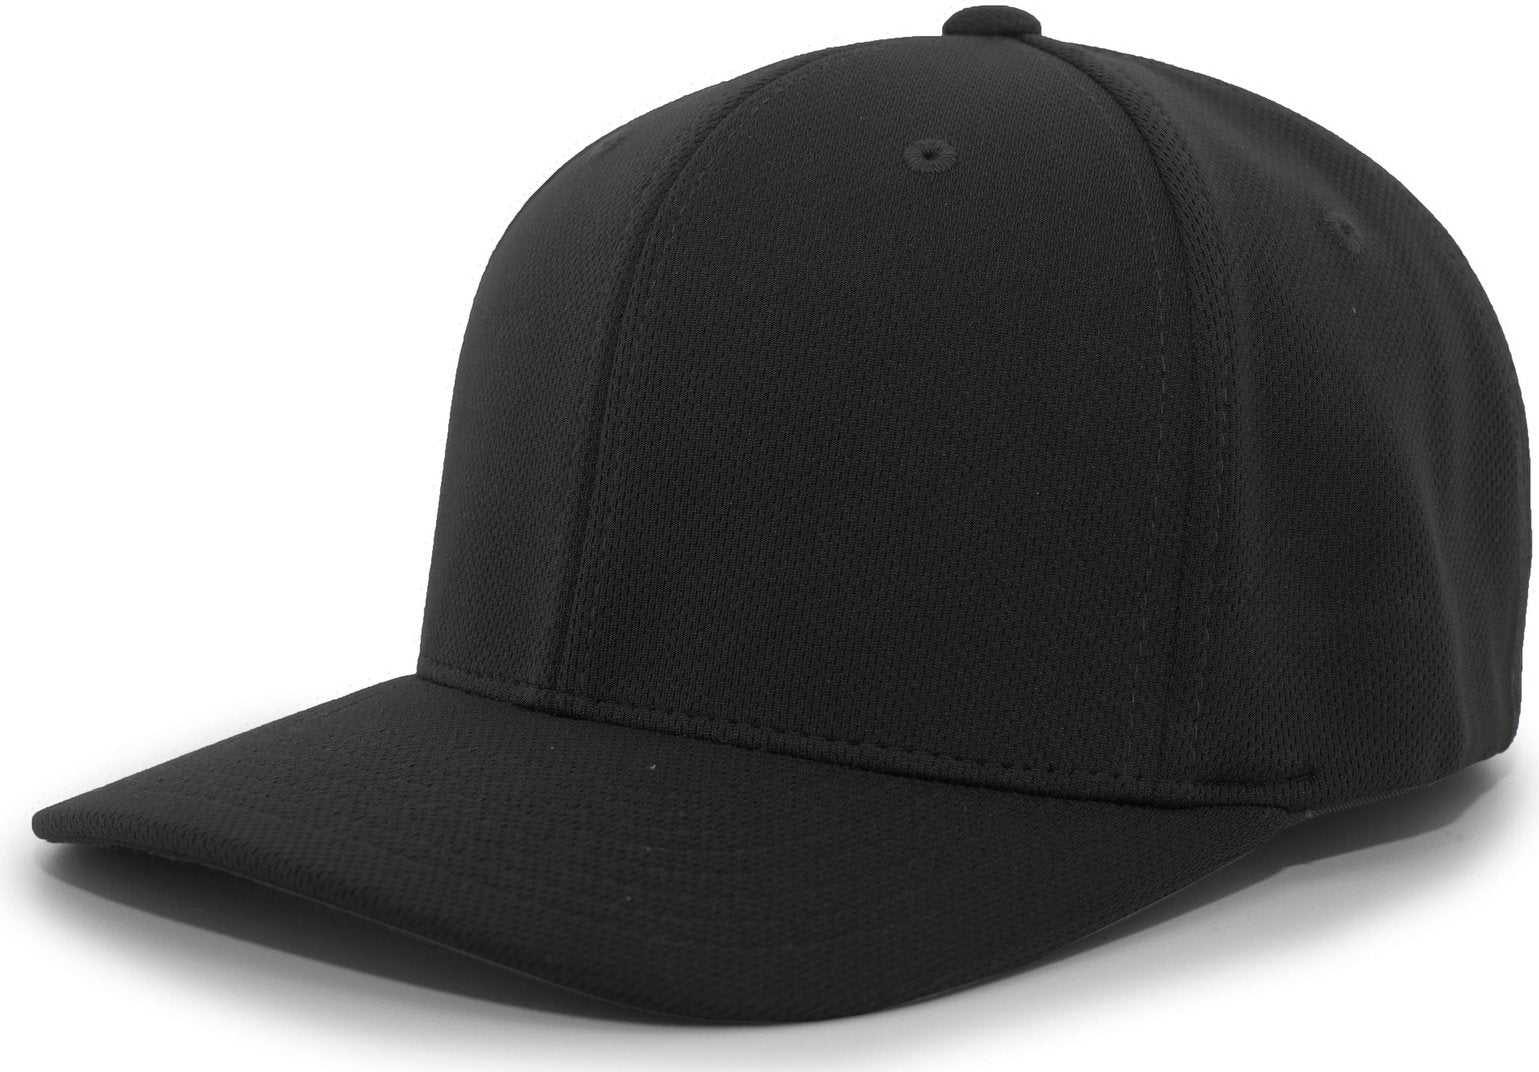 Pacific Headwear 487F P-Tec Performance Flexfit Cap - Black - HIT a Double